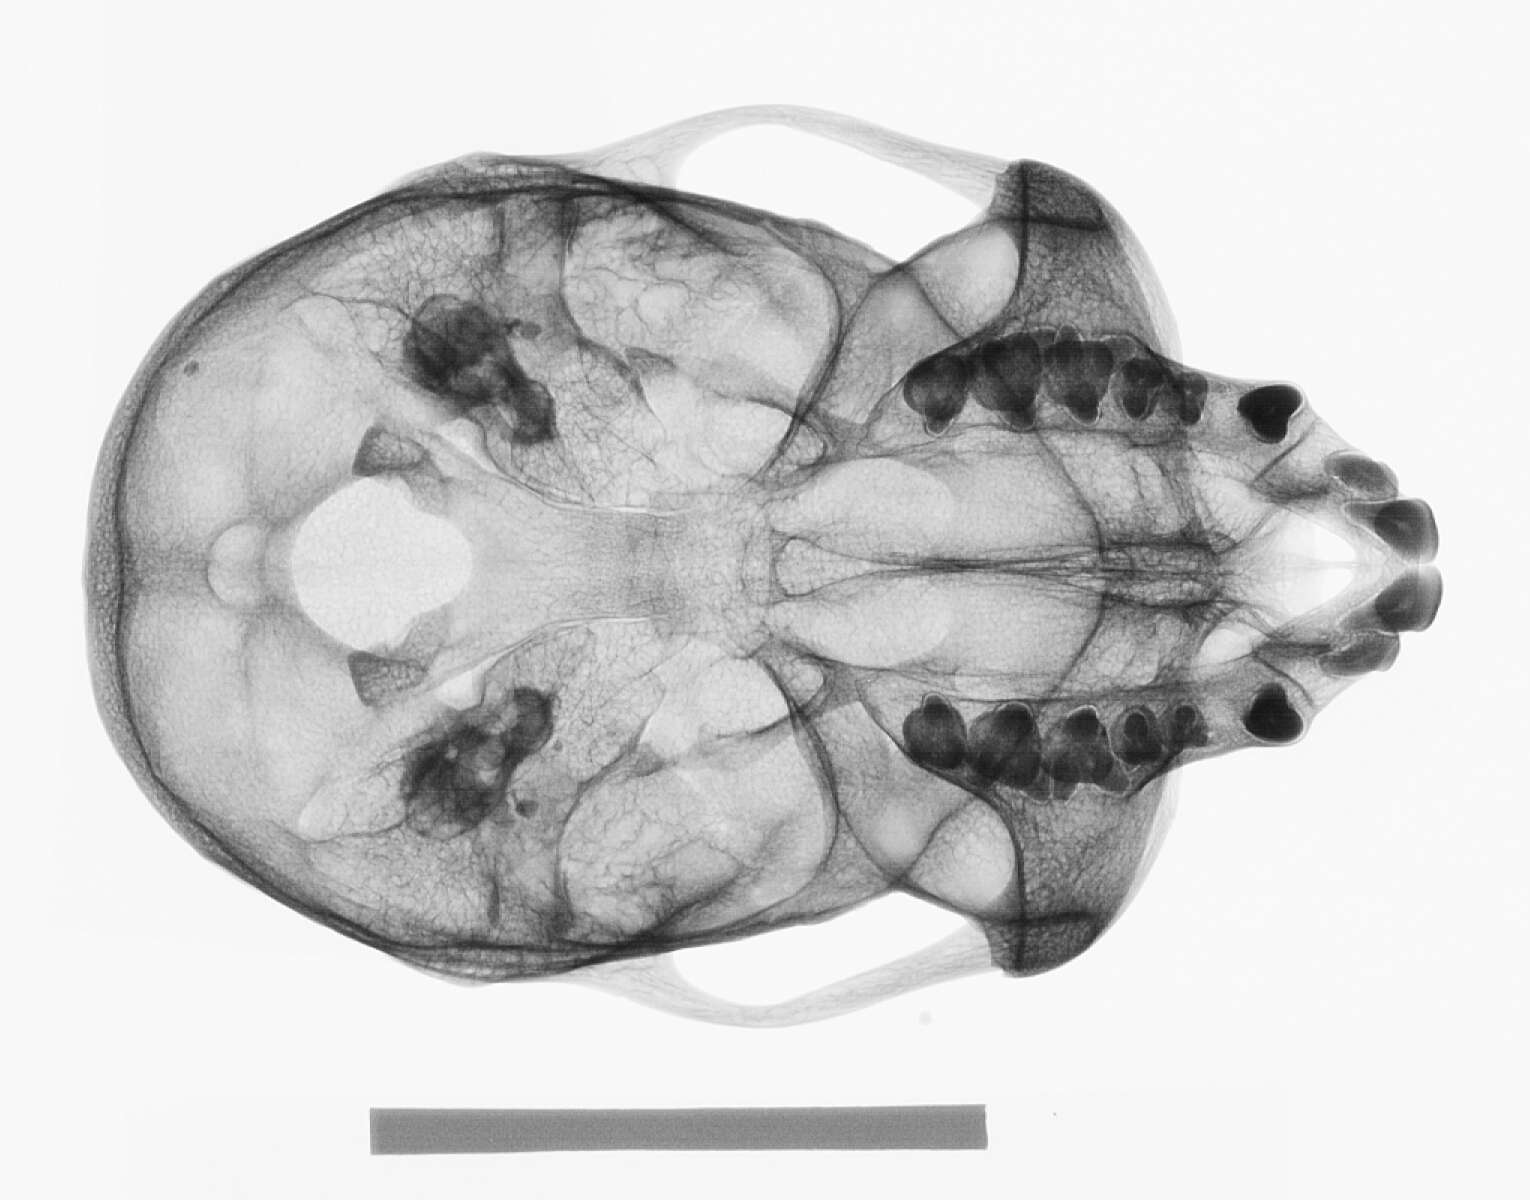 Plancia ëd Cercopithecus cephus cephodes Pocock 1907